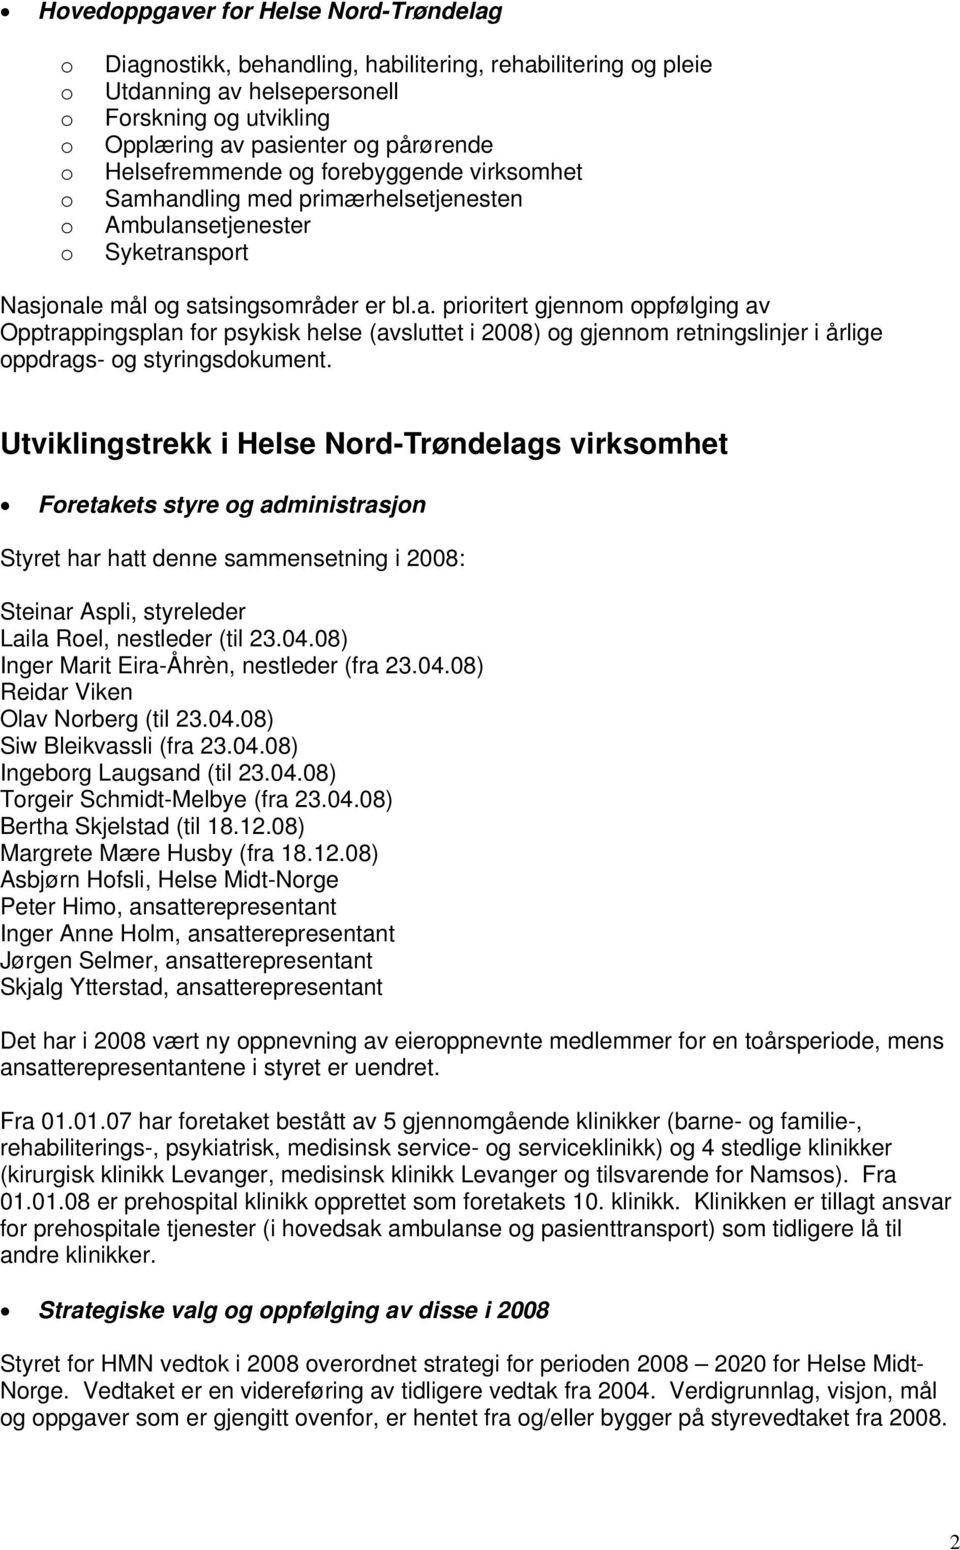 Utviklingstrekk i Helse Nrd-Trøndelags virksmhet Fretakets styre g administrasjn Styret har hatt denne sammensetning i 2008: Steinar Aspli, styreleder Laila Rel, nestleder (til 23.04.